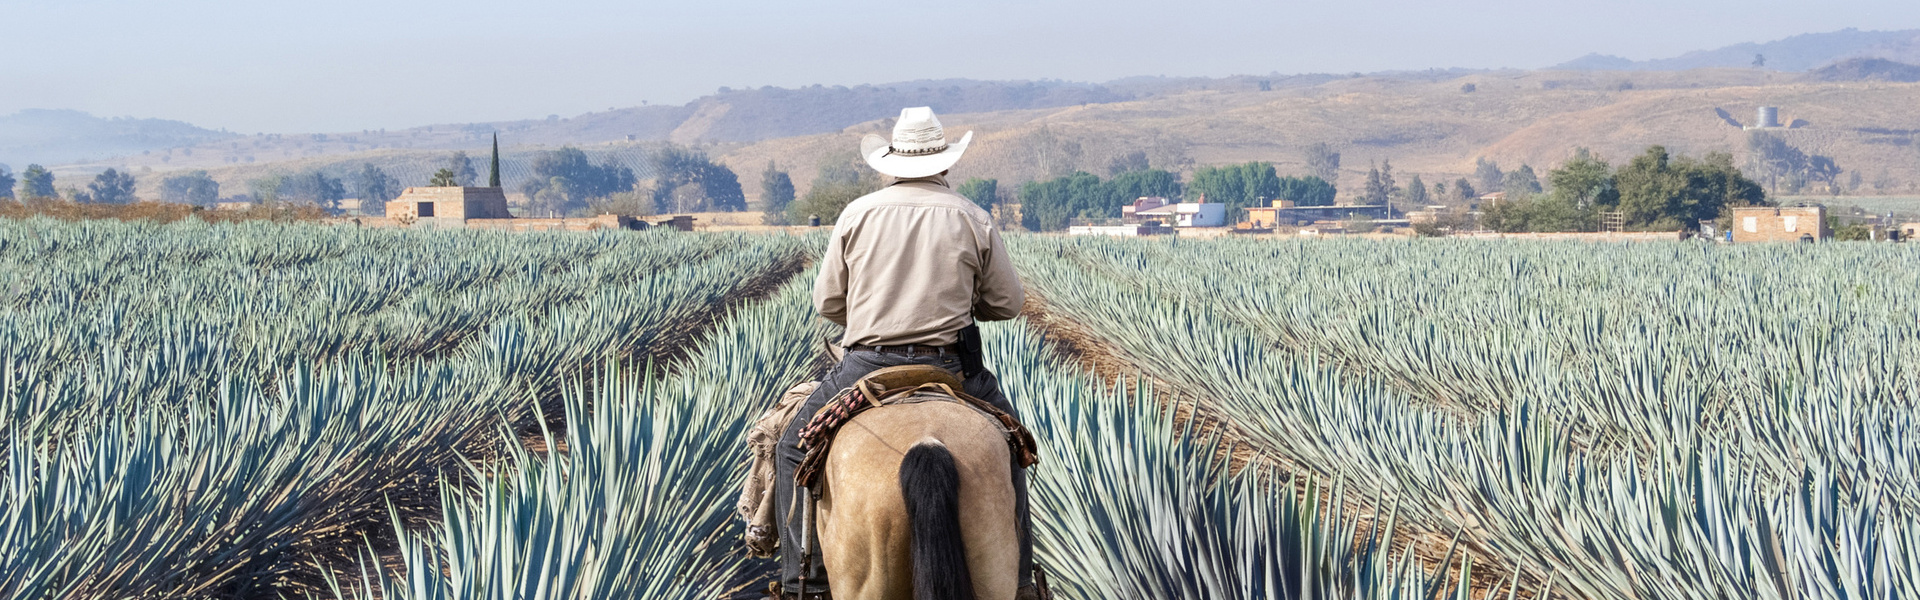 Ruta del tequila en Jalisco